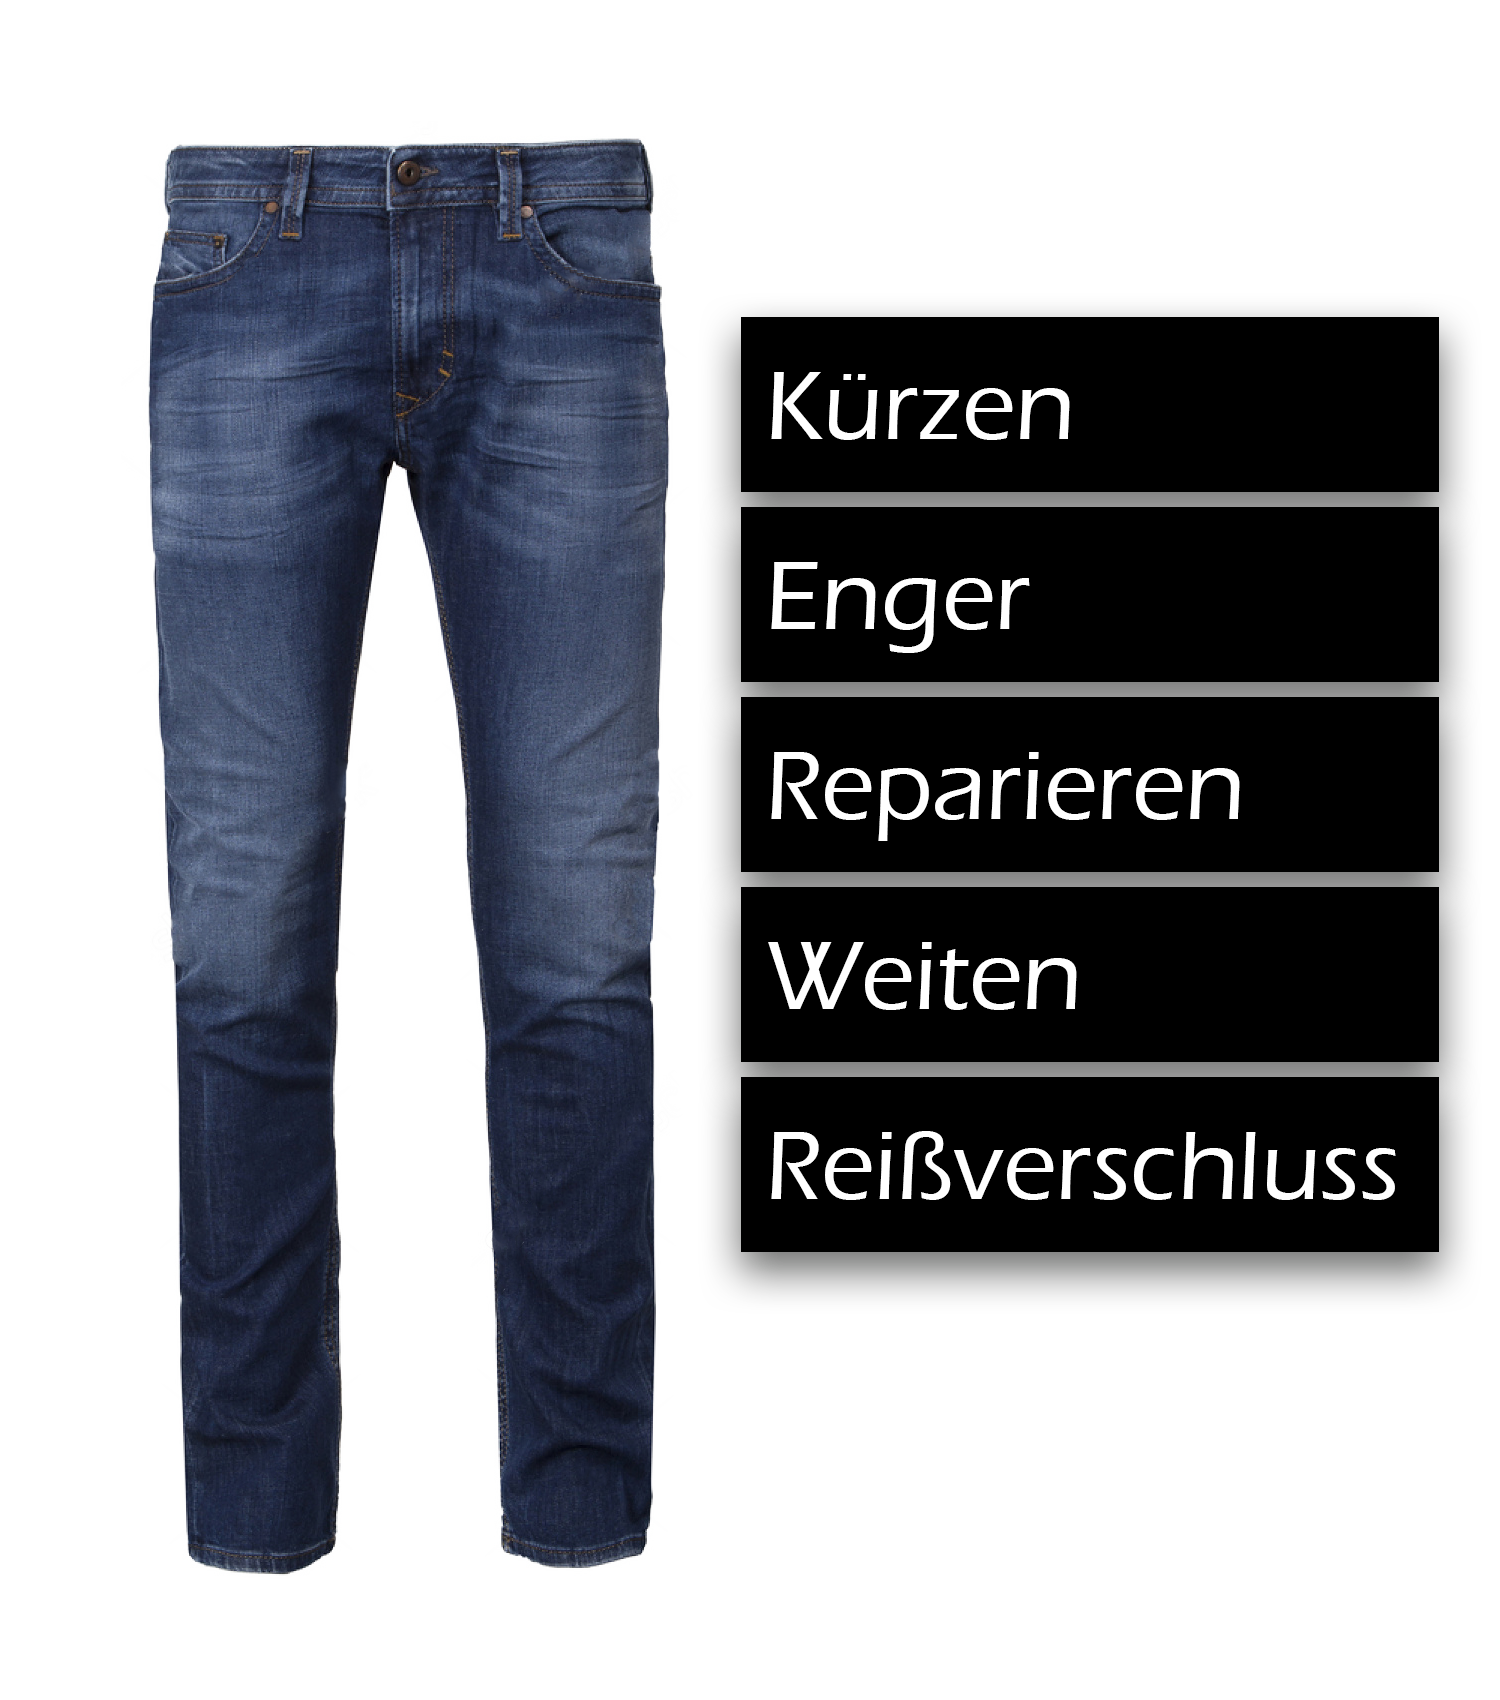 Jeans kürzen, enger, reparieren, weiten reißverschluß